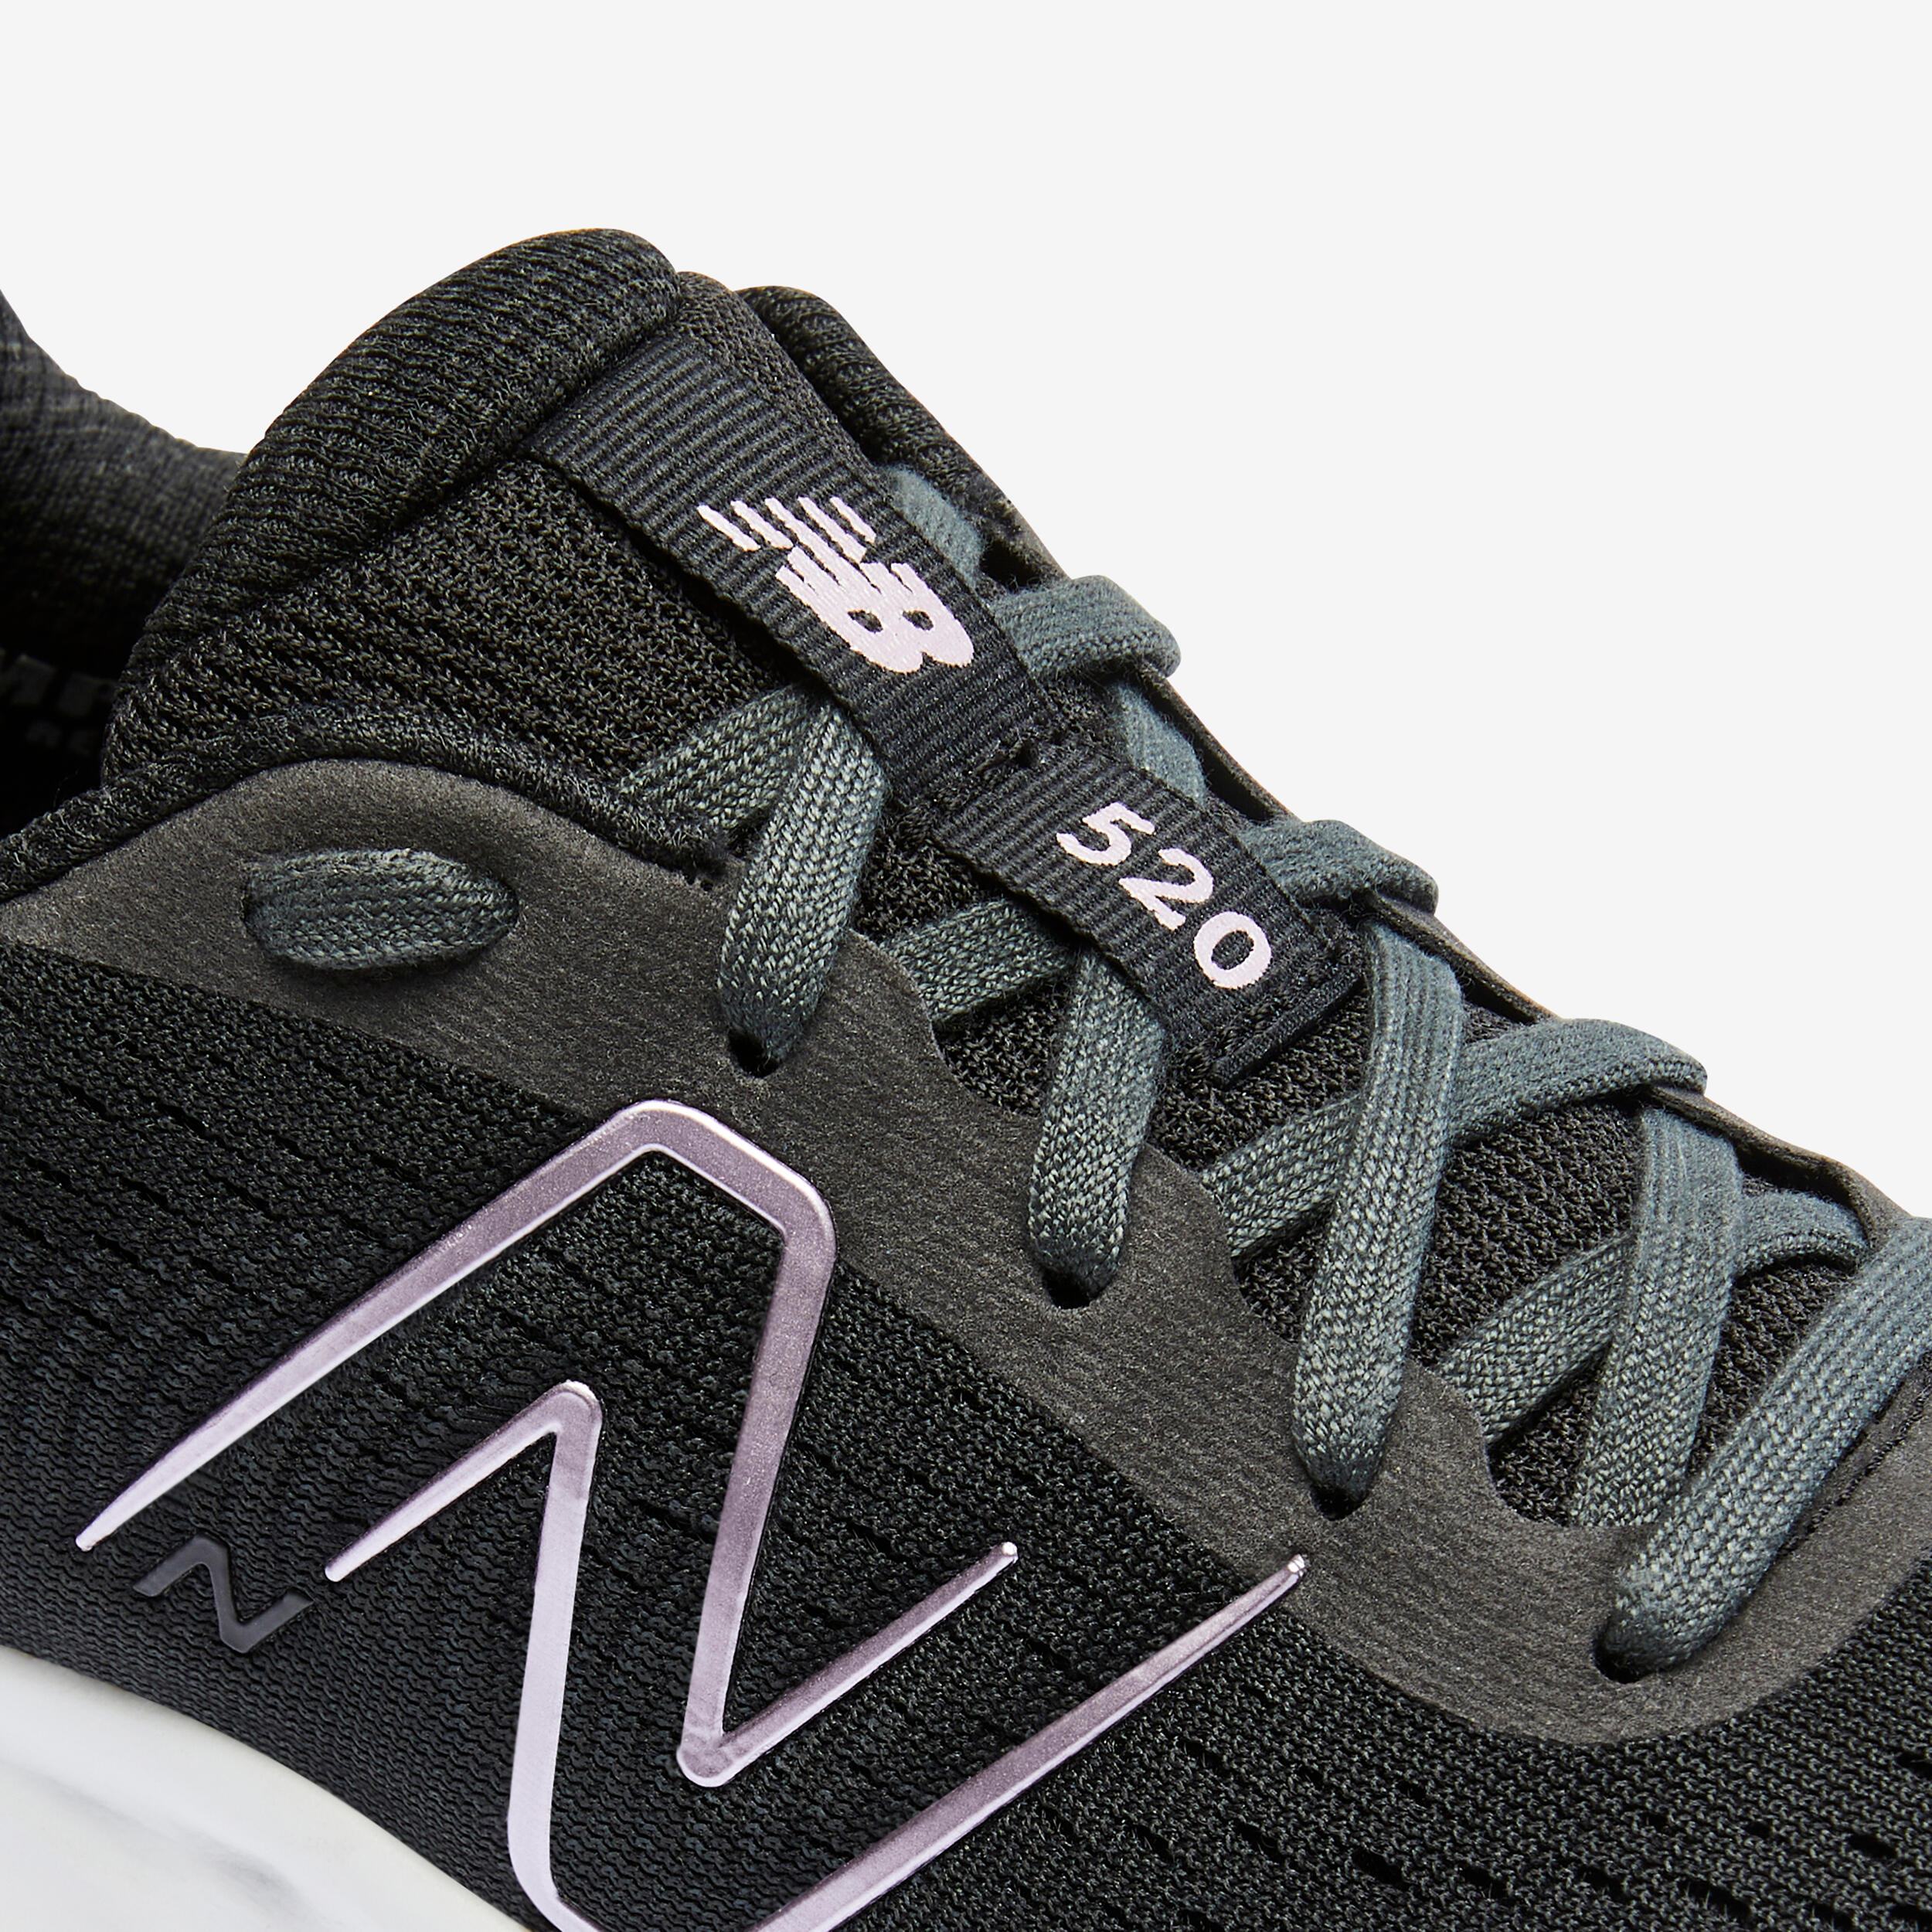 NB W520 v8 BLACK women's running shoes 8/8